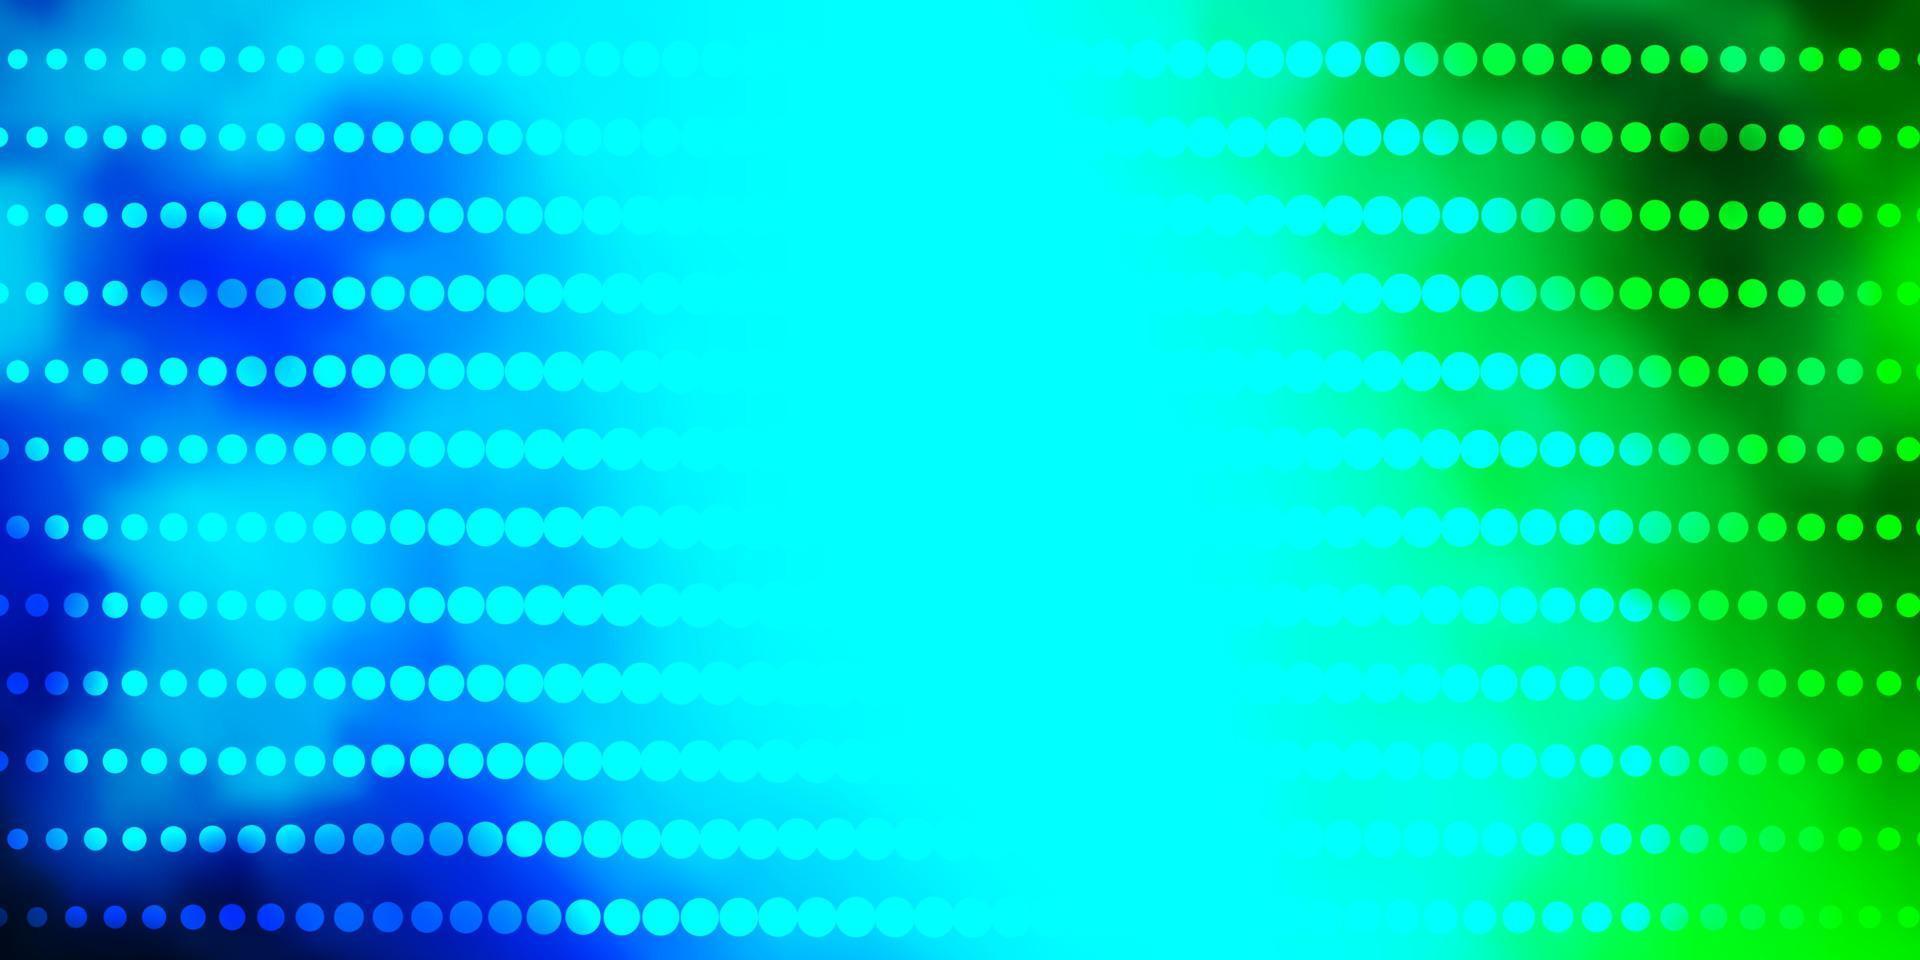 ljusblått, grönt vektormönster med cirklar. vektor